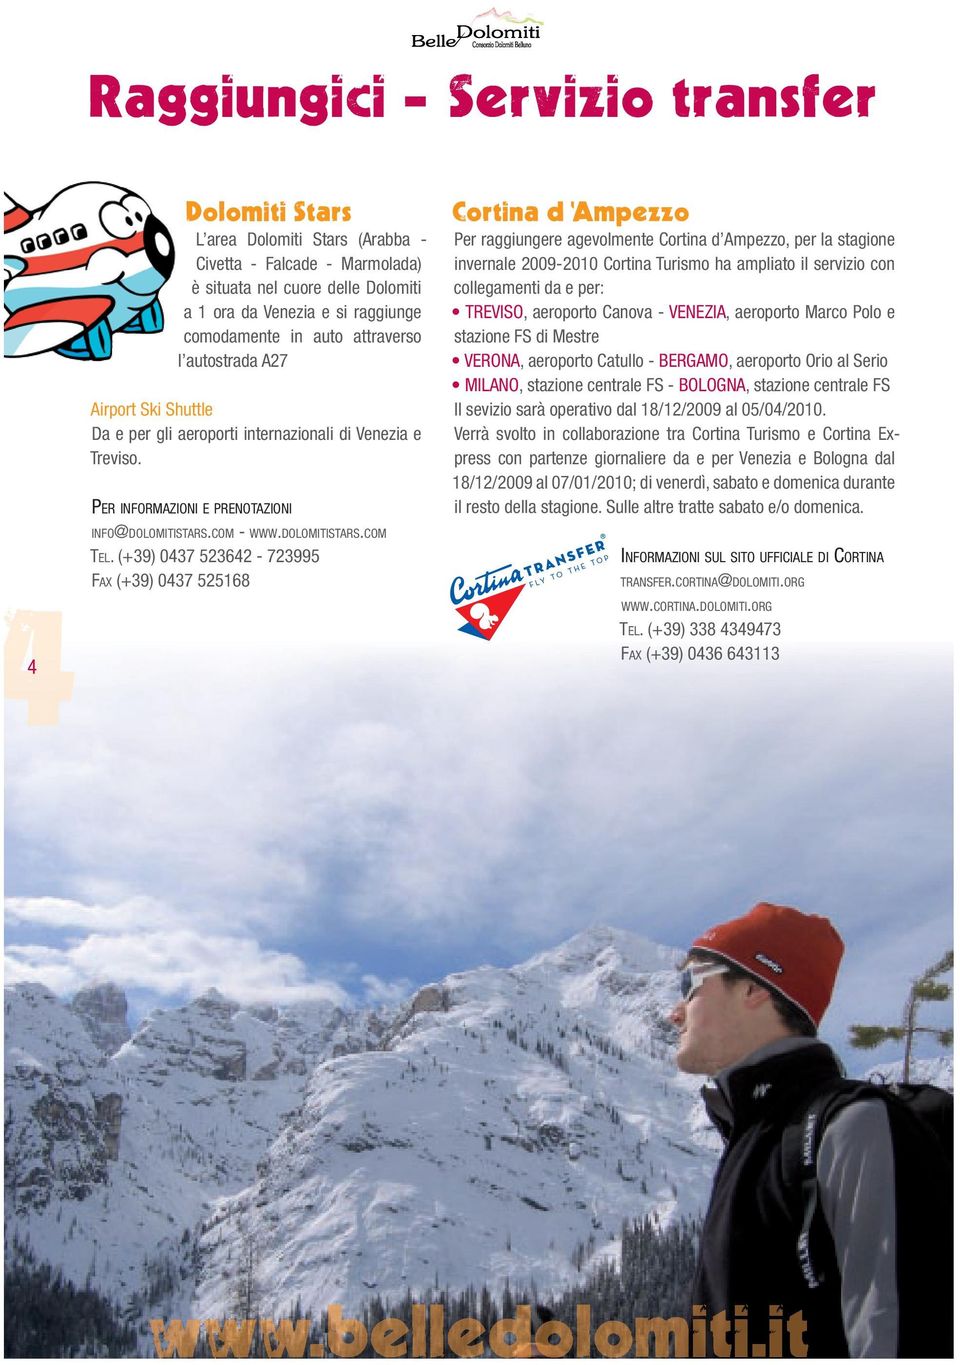 (+39) 0437 523642-723995 FAX (+39) 0437 525168 Per raggiungere agevolmente Cortina d Ampezzo, per la stagione invernale 2009-2010 Cortina Turismo ha ampliato il servizio con collegamenti da e per:,